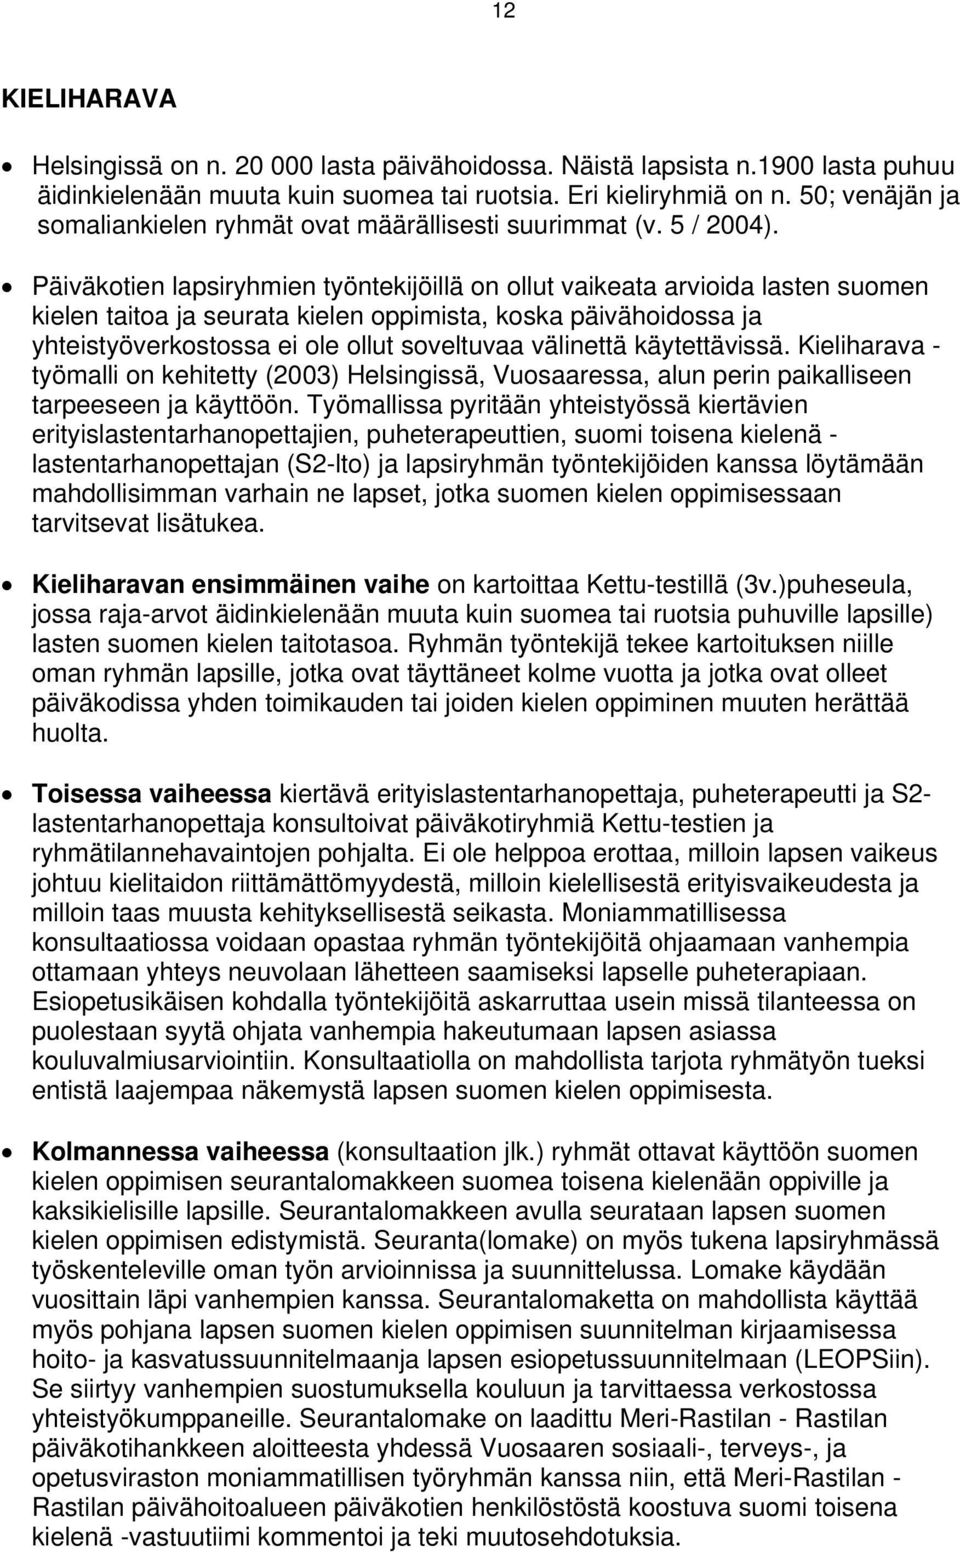 Päiväkotien lapsiryhmien työntekijöillä on ollut vaikeata arvioida lasten suomen kielen taitoa ja seurata kielen oppimista, koska päivähoidossa ja yhteistyöverkostossa ei ole ollut soveltuvaa